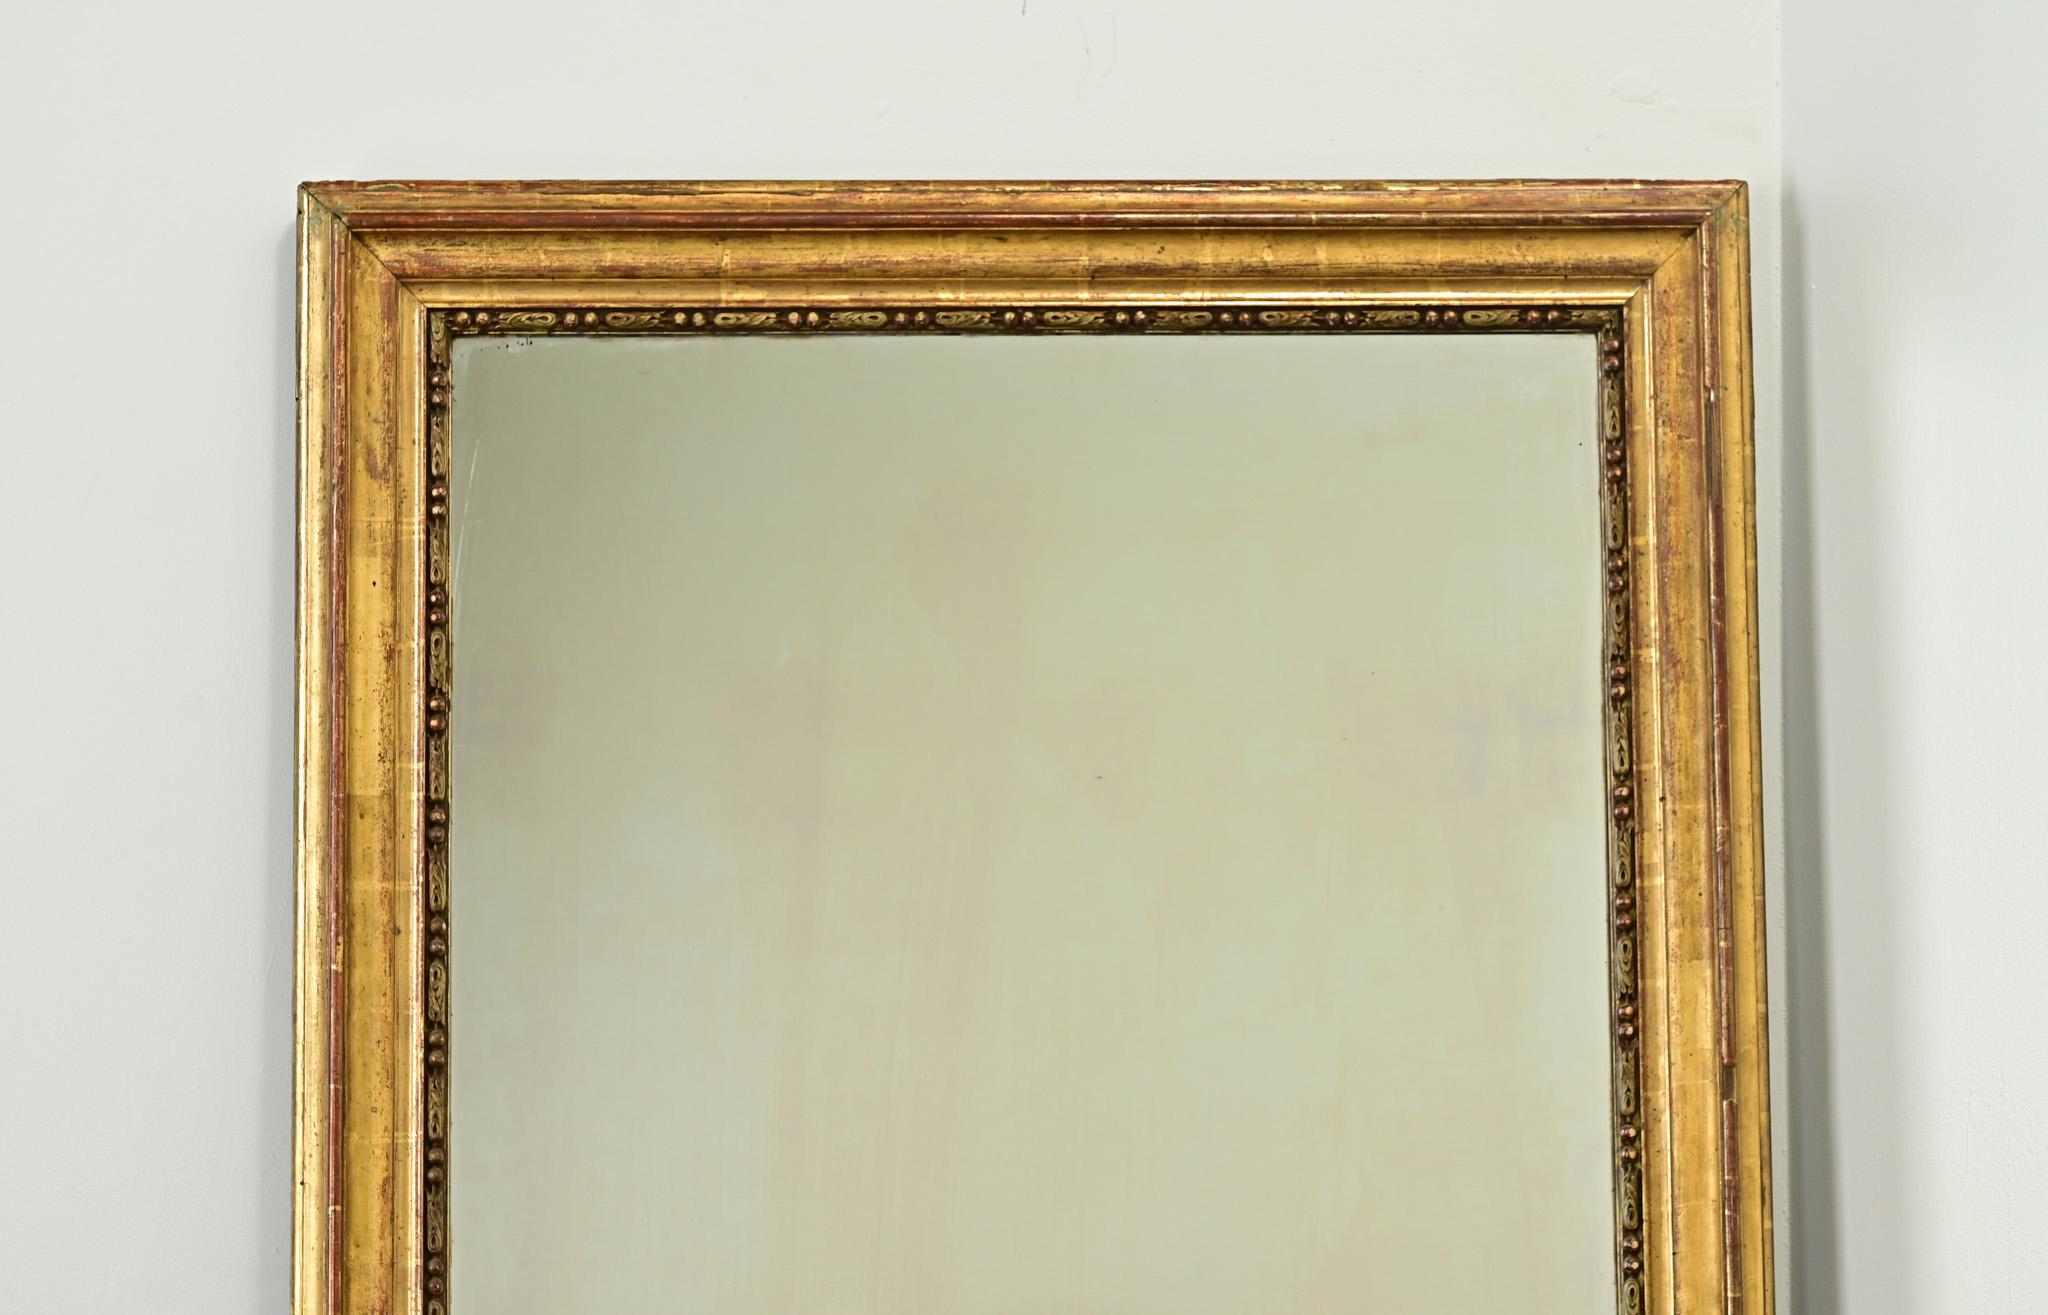 Miroir français doré du 19ème siècle. Le cadre moulé simple a sa finition dorée d'origine, révélant le bole rougeâtre en dessous. La plaque de miroir plus récente présente un vieillissement minimal. N'oubliez pas de regarder les images détaillées de